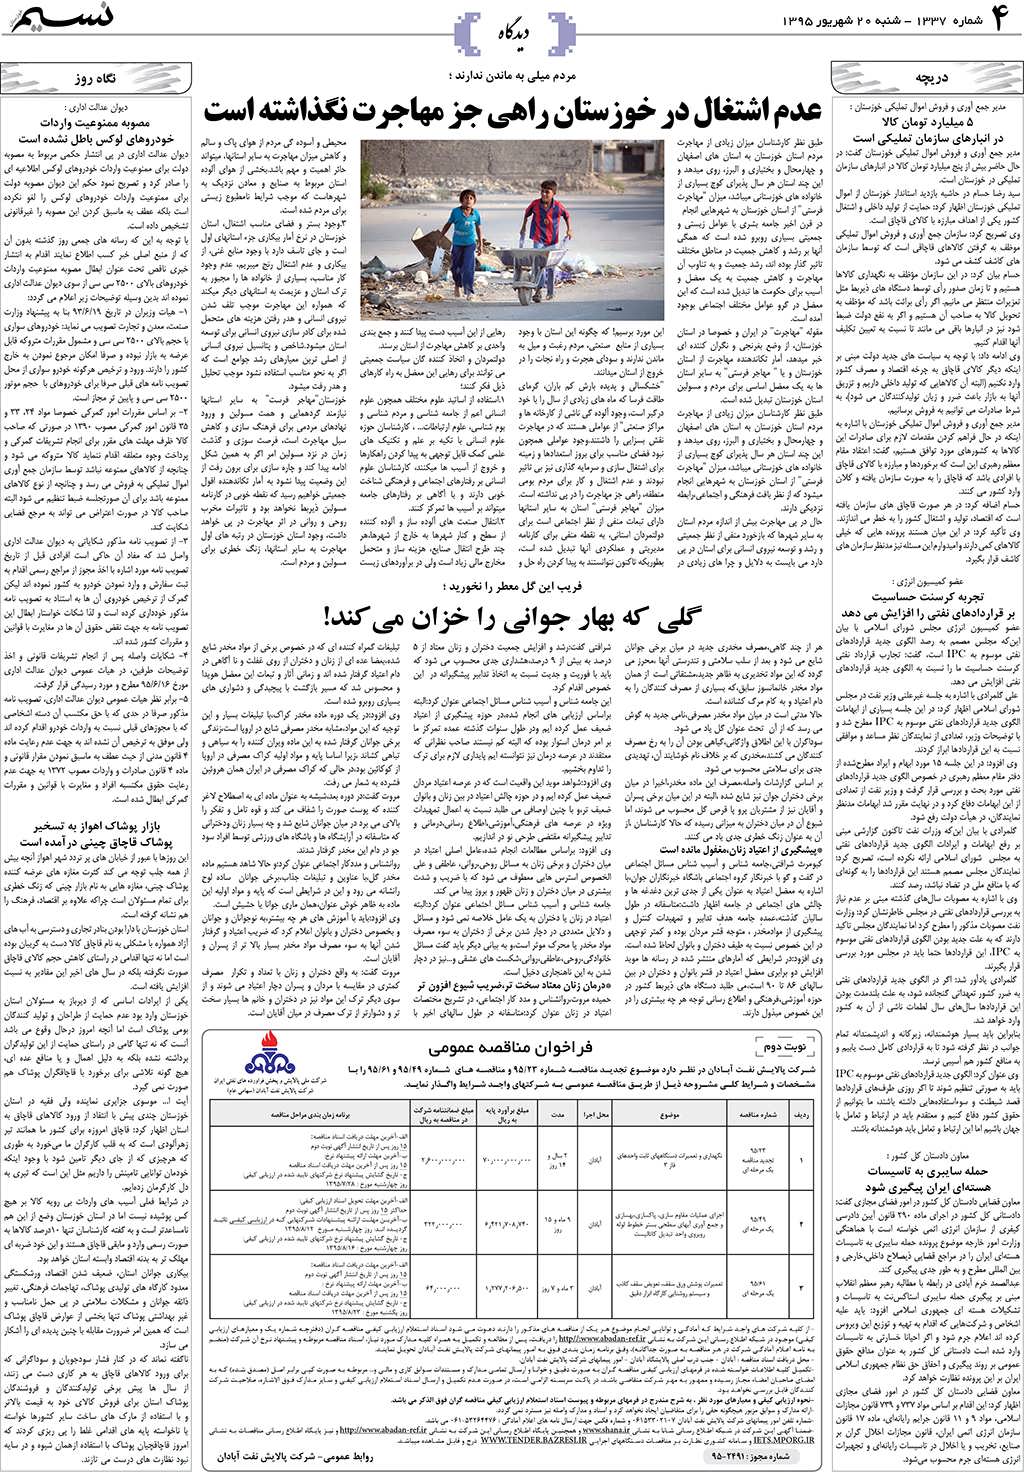 صفحه دیدگاه روزنامه نسیم شماره 1337